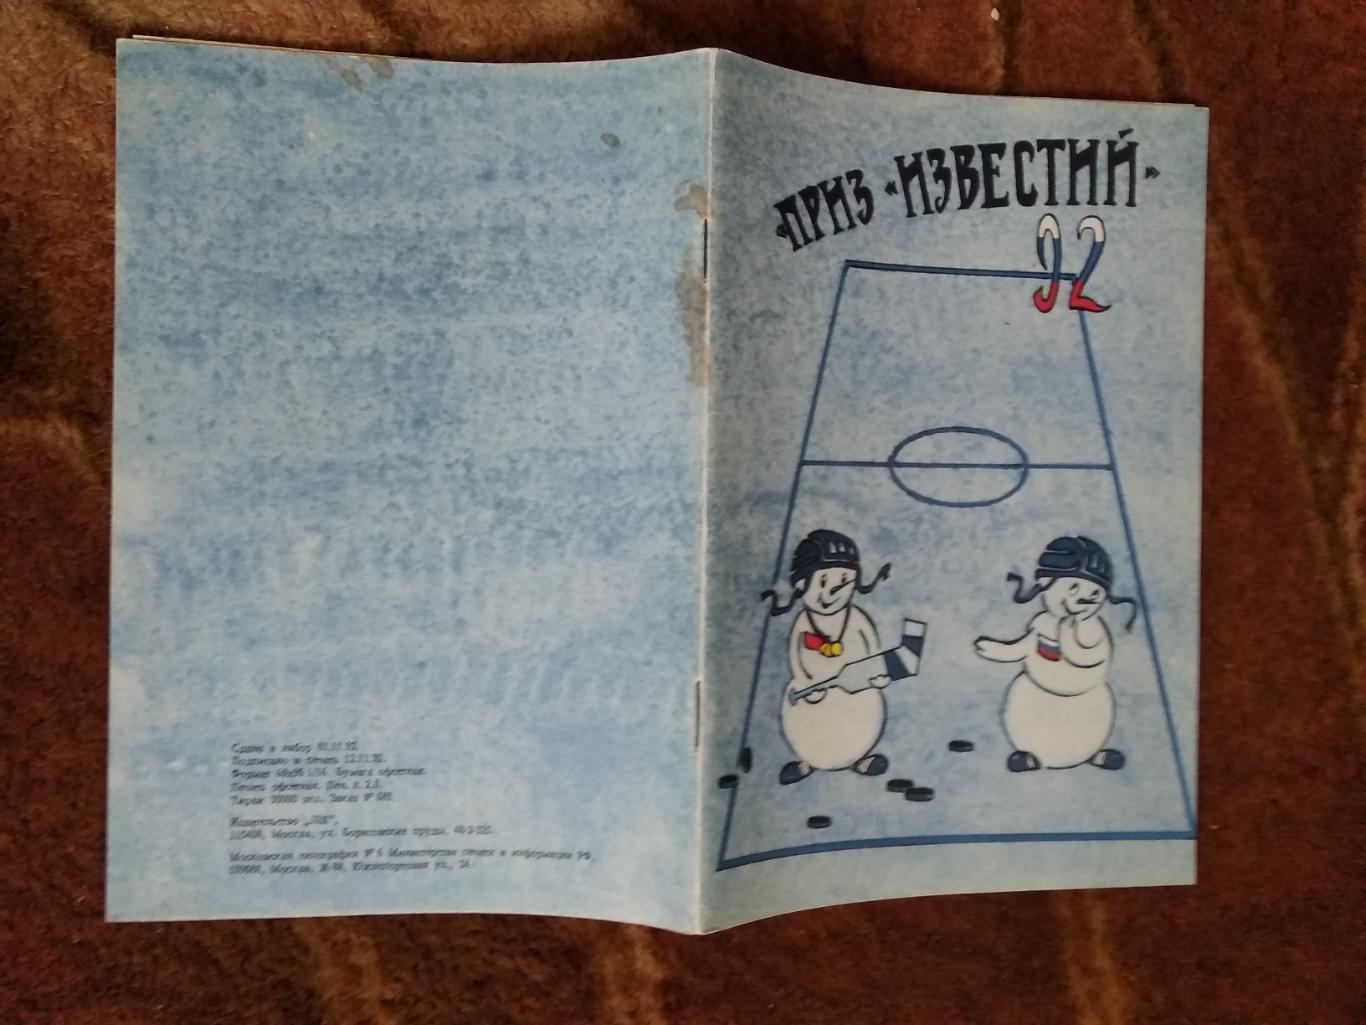 Приз Известий 1992 г. (сост.Н.Боровиков).